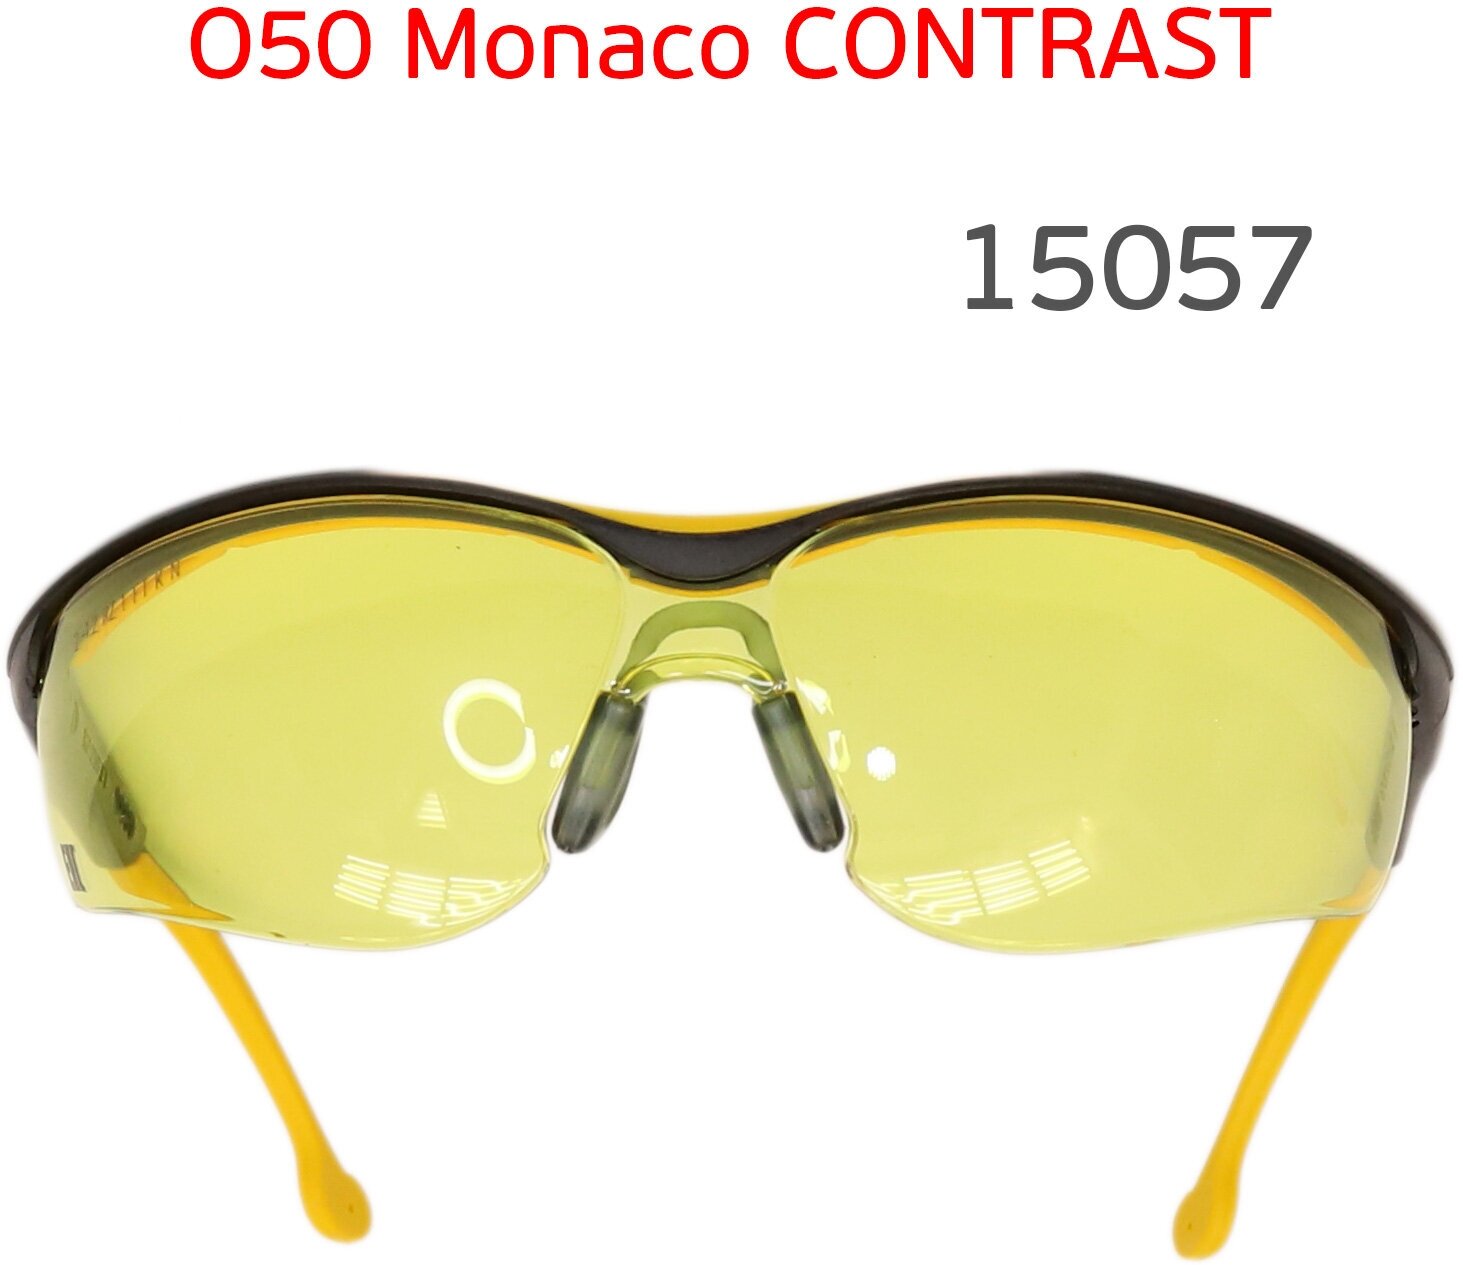 Очки РОСОМЗ O50 Monaco CONTRAST 15057 желтые защитные открытые - фотография № 7